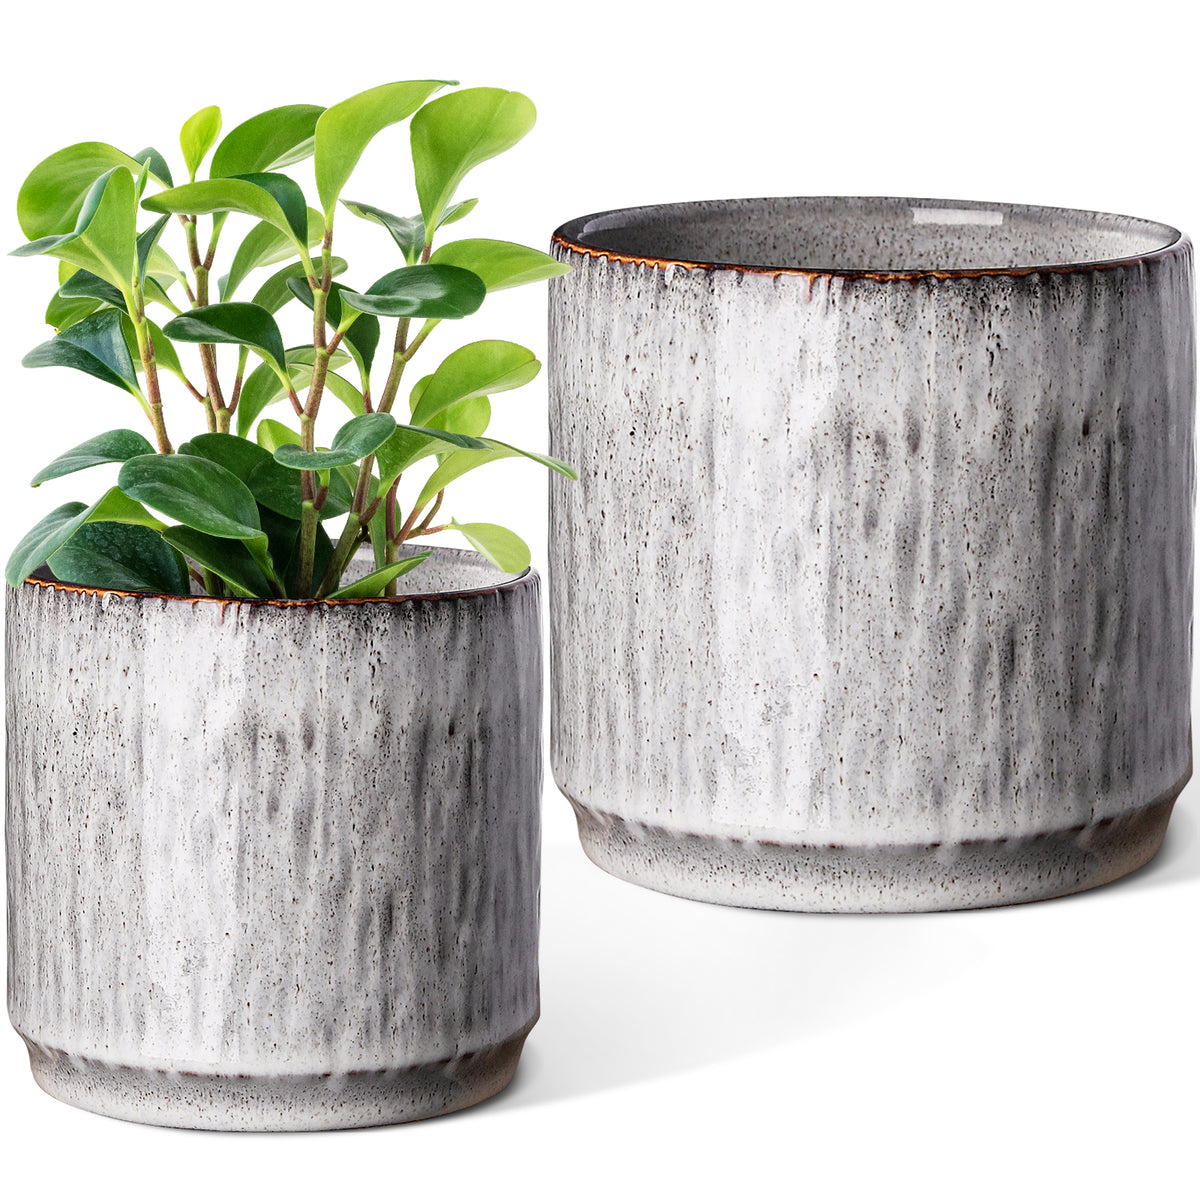 https://jofamy.com/cdn/shop/products/jofamy-2-packs-modern-country-ceramic-flower-pots-indoor-outdoor-tree-texture-design_1200x1200.jpg?v=1658487987